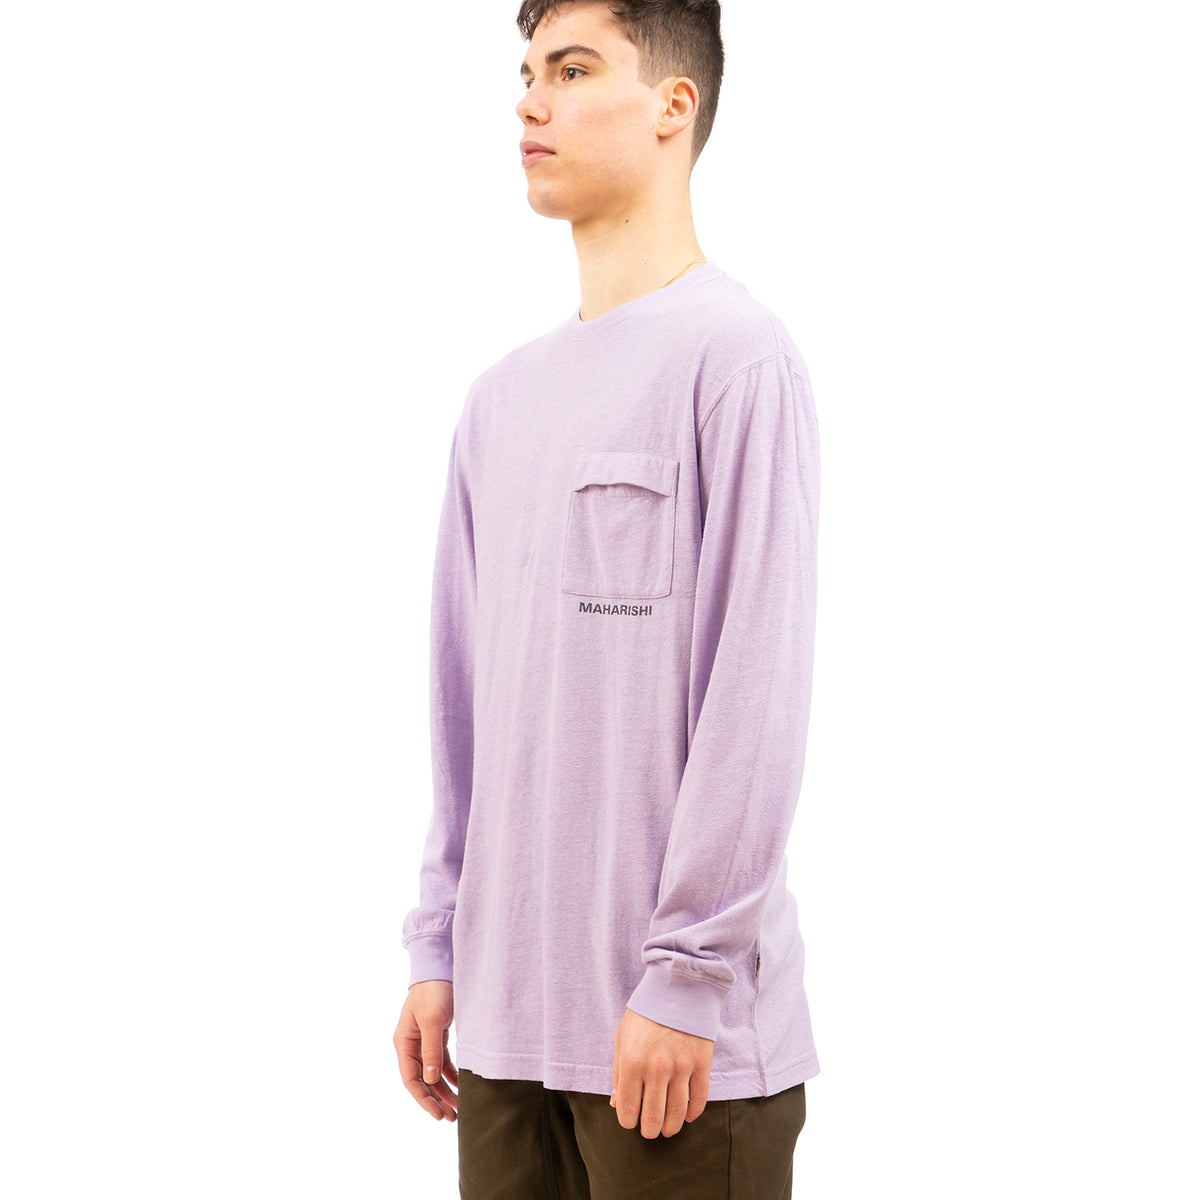 maharishi | 7007 Hemp L/S T-shirt HOCJ 200 Lavender - Concrete